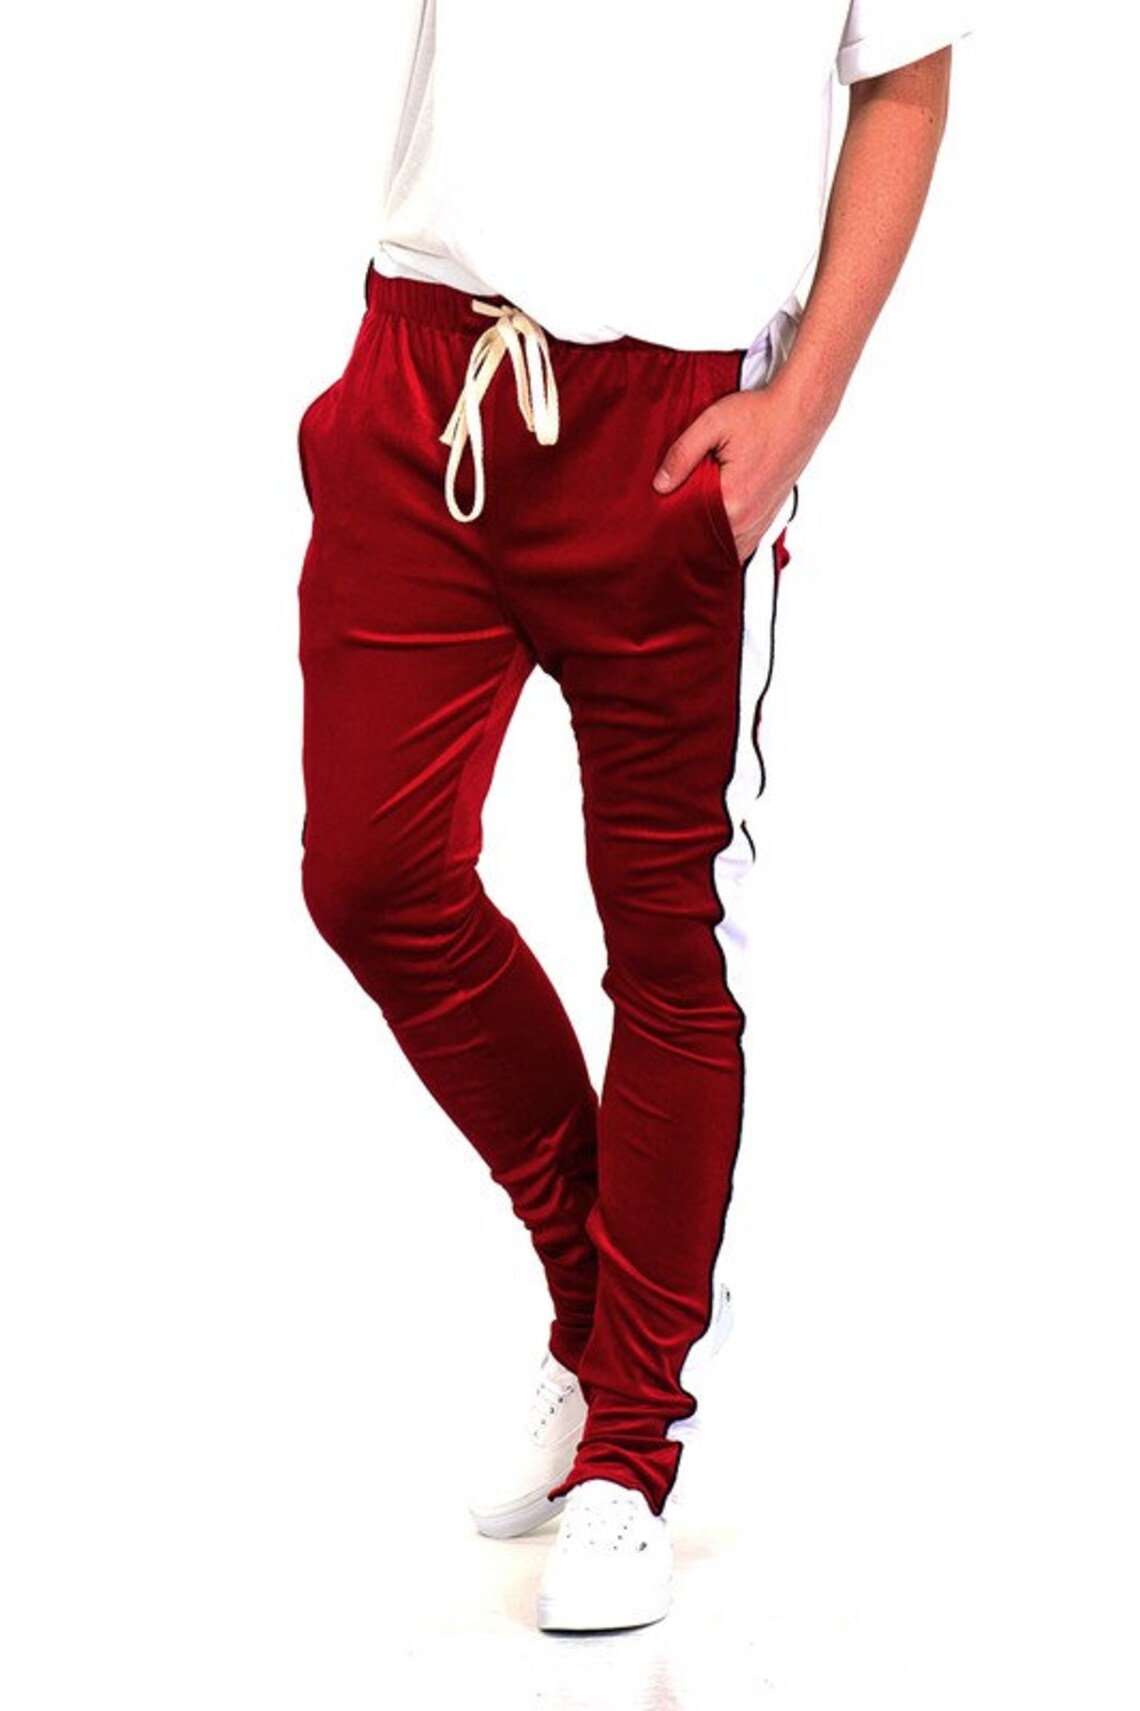 Velvet Jogger Pants For Men Sweatpants Red | Etsy